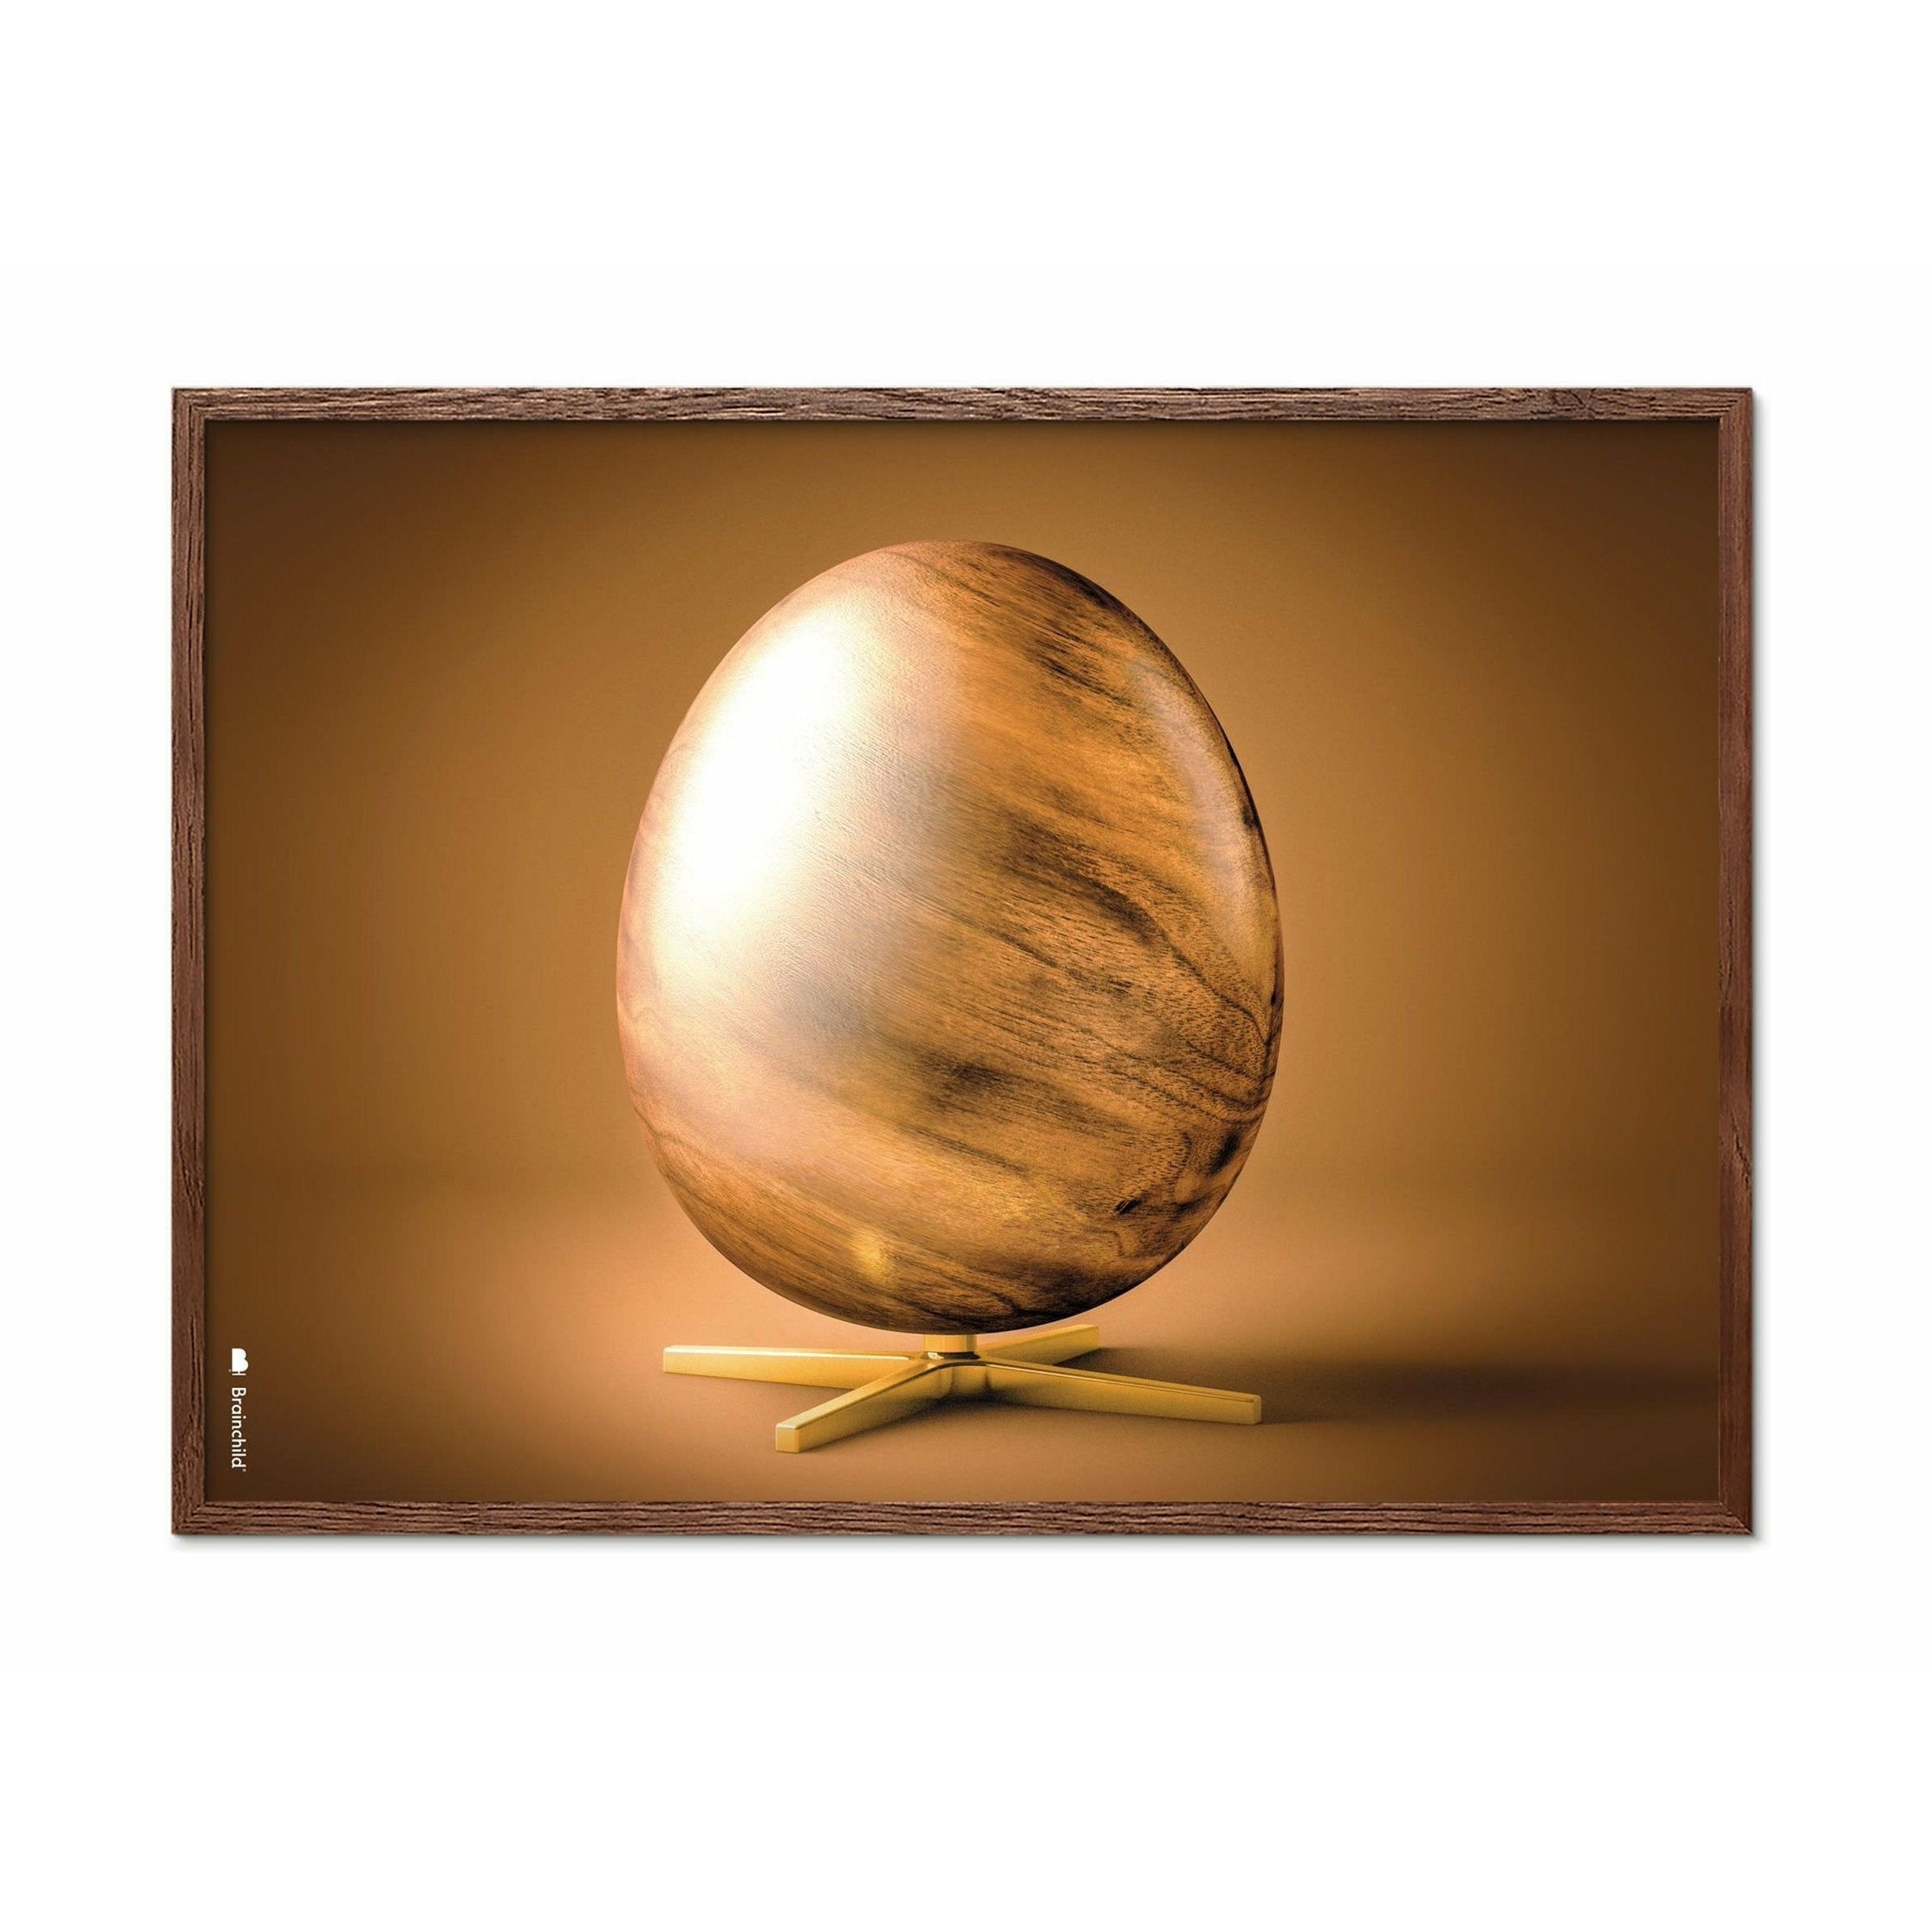 Plakát křížového formátu vajec z mozku, rám vyrobený z tmavého dřeva 50x70 cm, hnědý